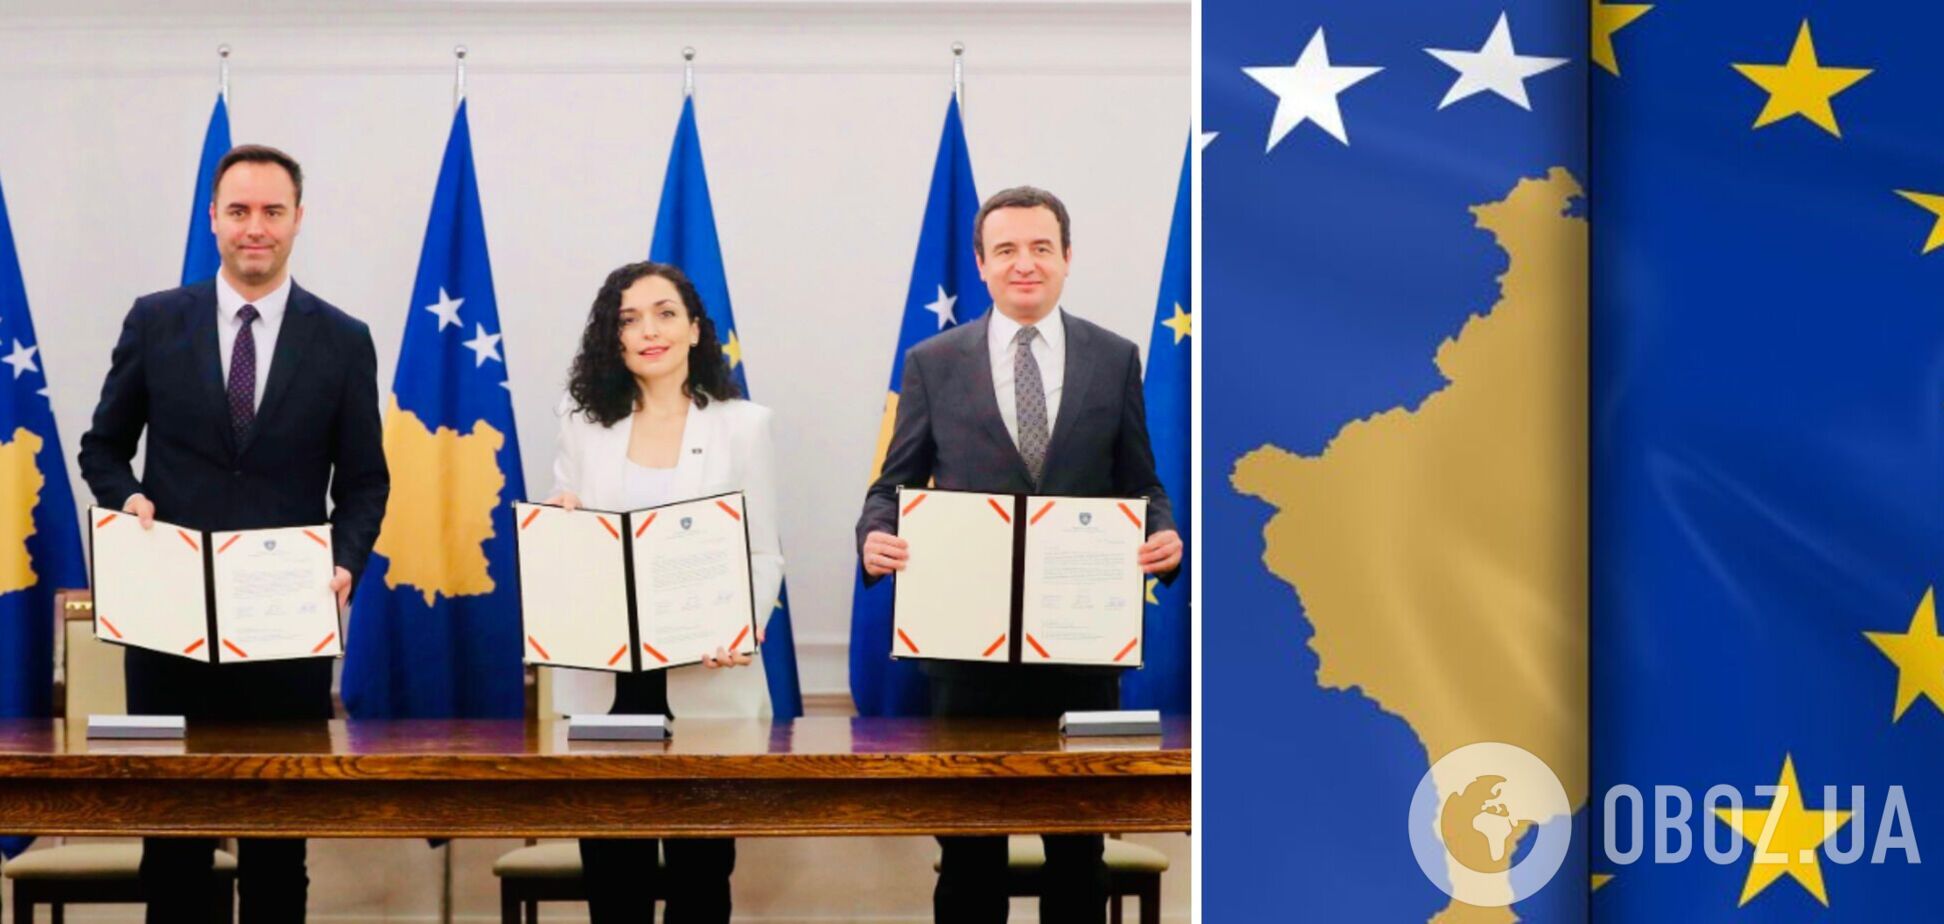 Лидеры Косово подписали заявку на вступление в ЕС и назвали это историческим моментом. Фото